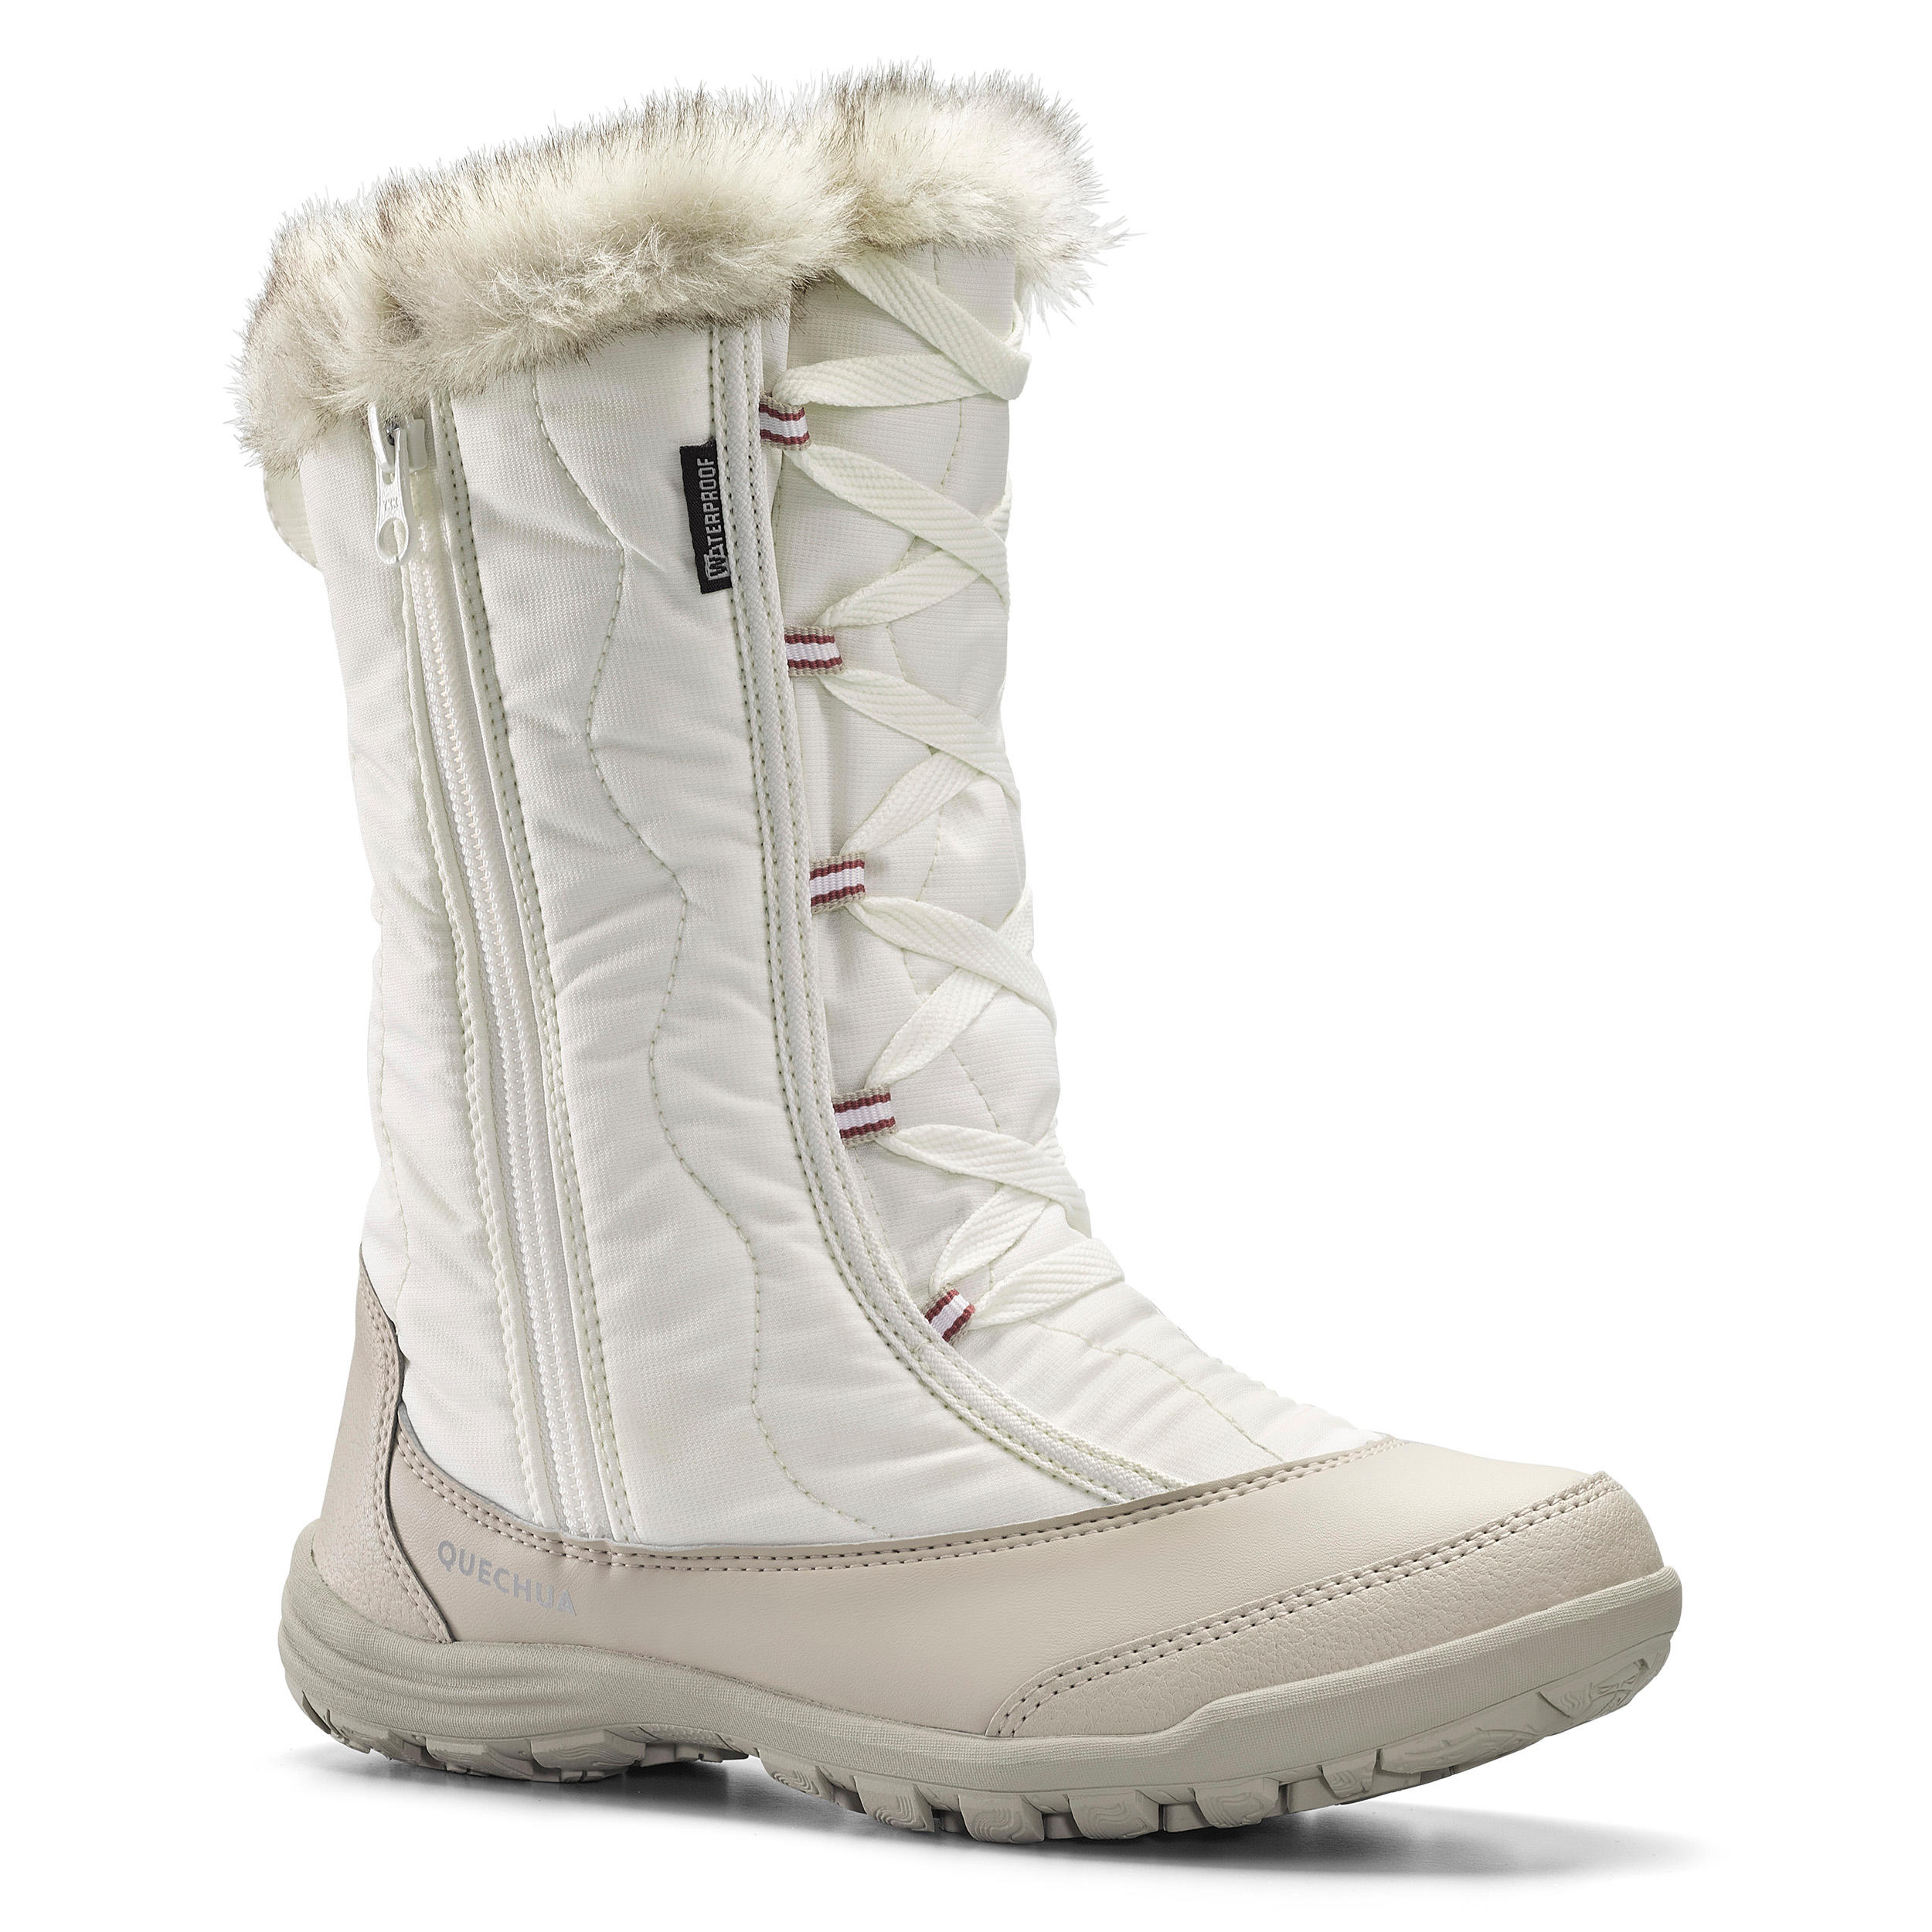 ladies snow boots size 7